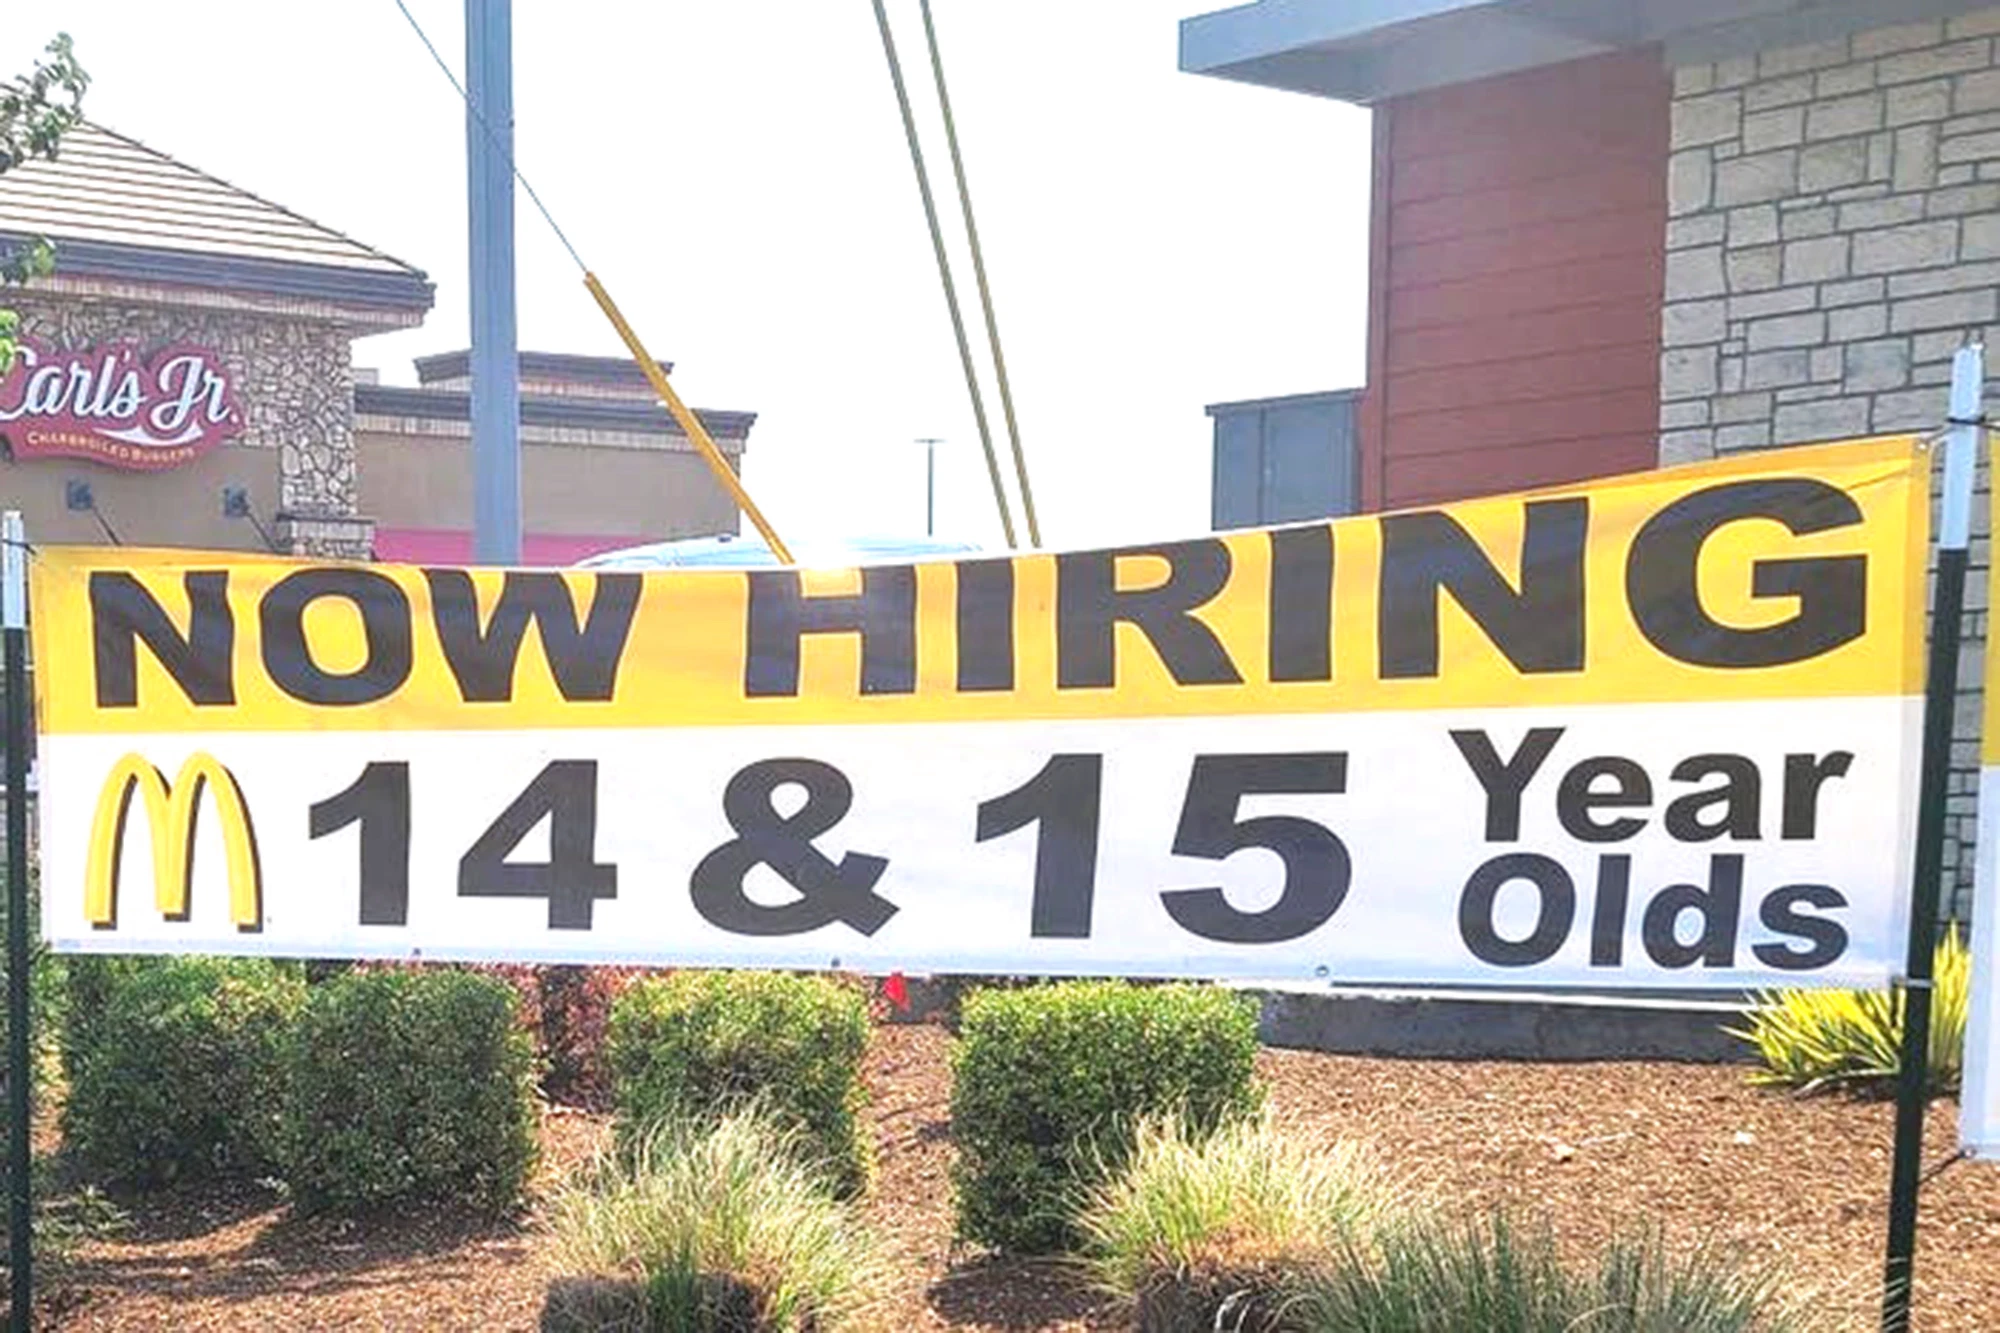 Amerikan McDonald's şimdi 14 yaşındakilere iş vermeye istekli